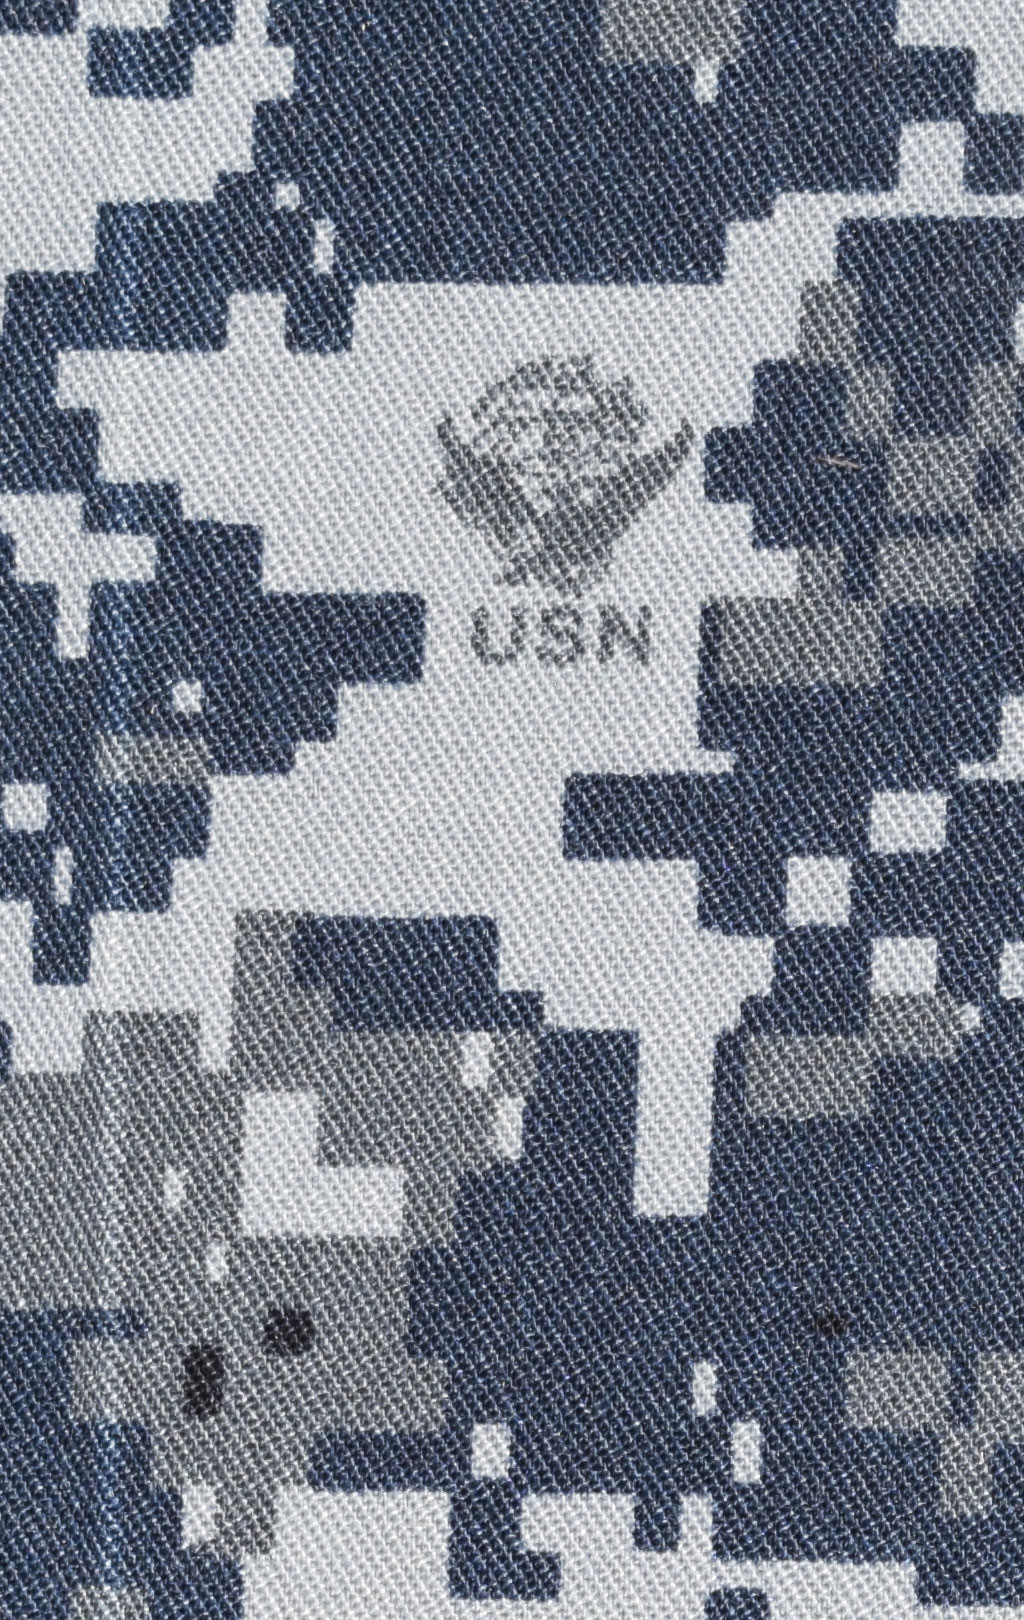 Брюки NWU digital navy б/у США